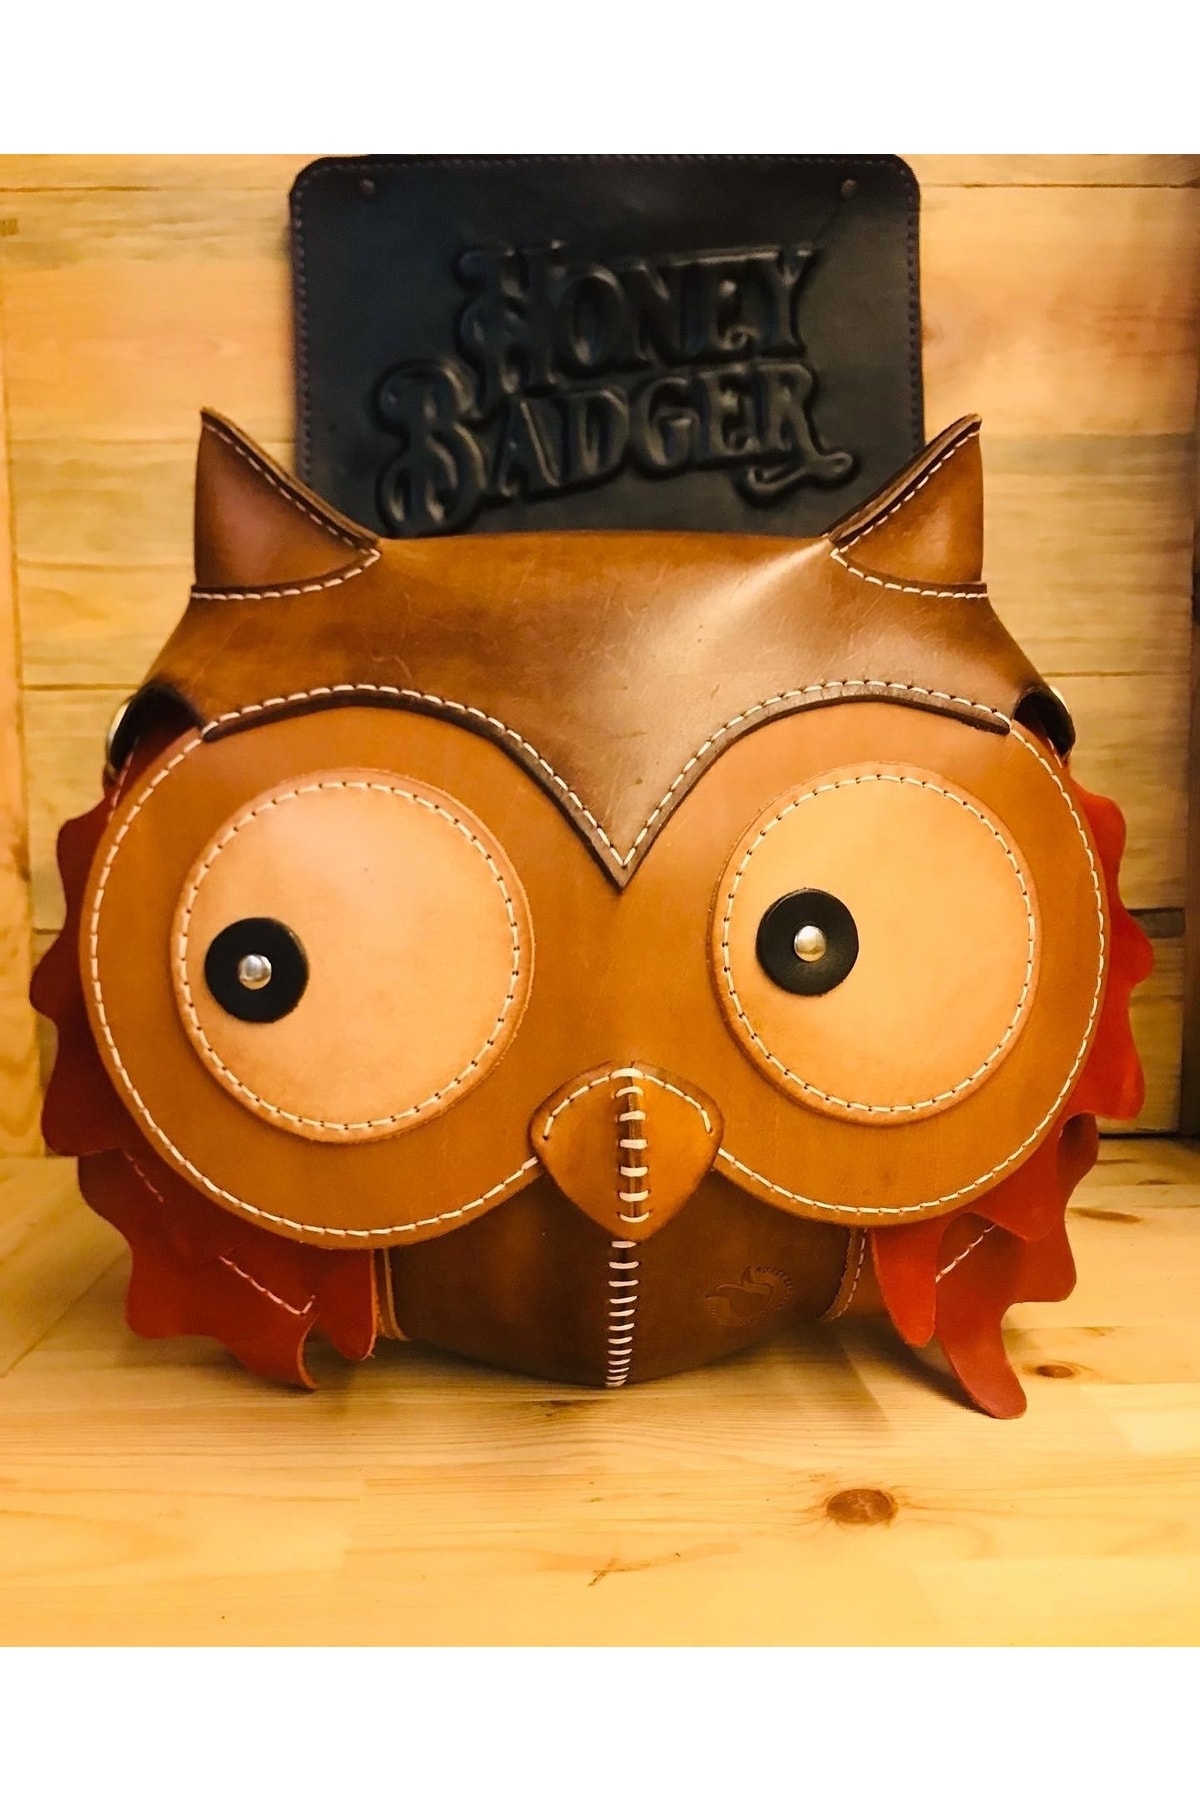 Honey Badger Leather El Yapımı Deri Baykuş Postacı Çantası (owl Leather Bag)